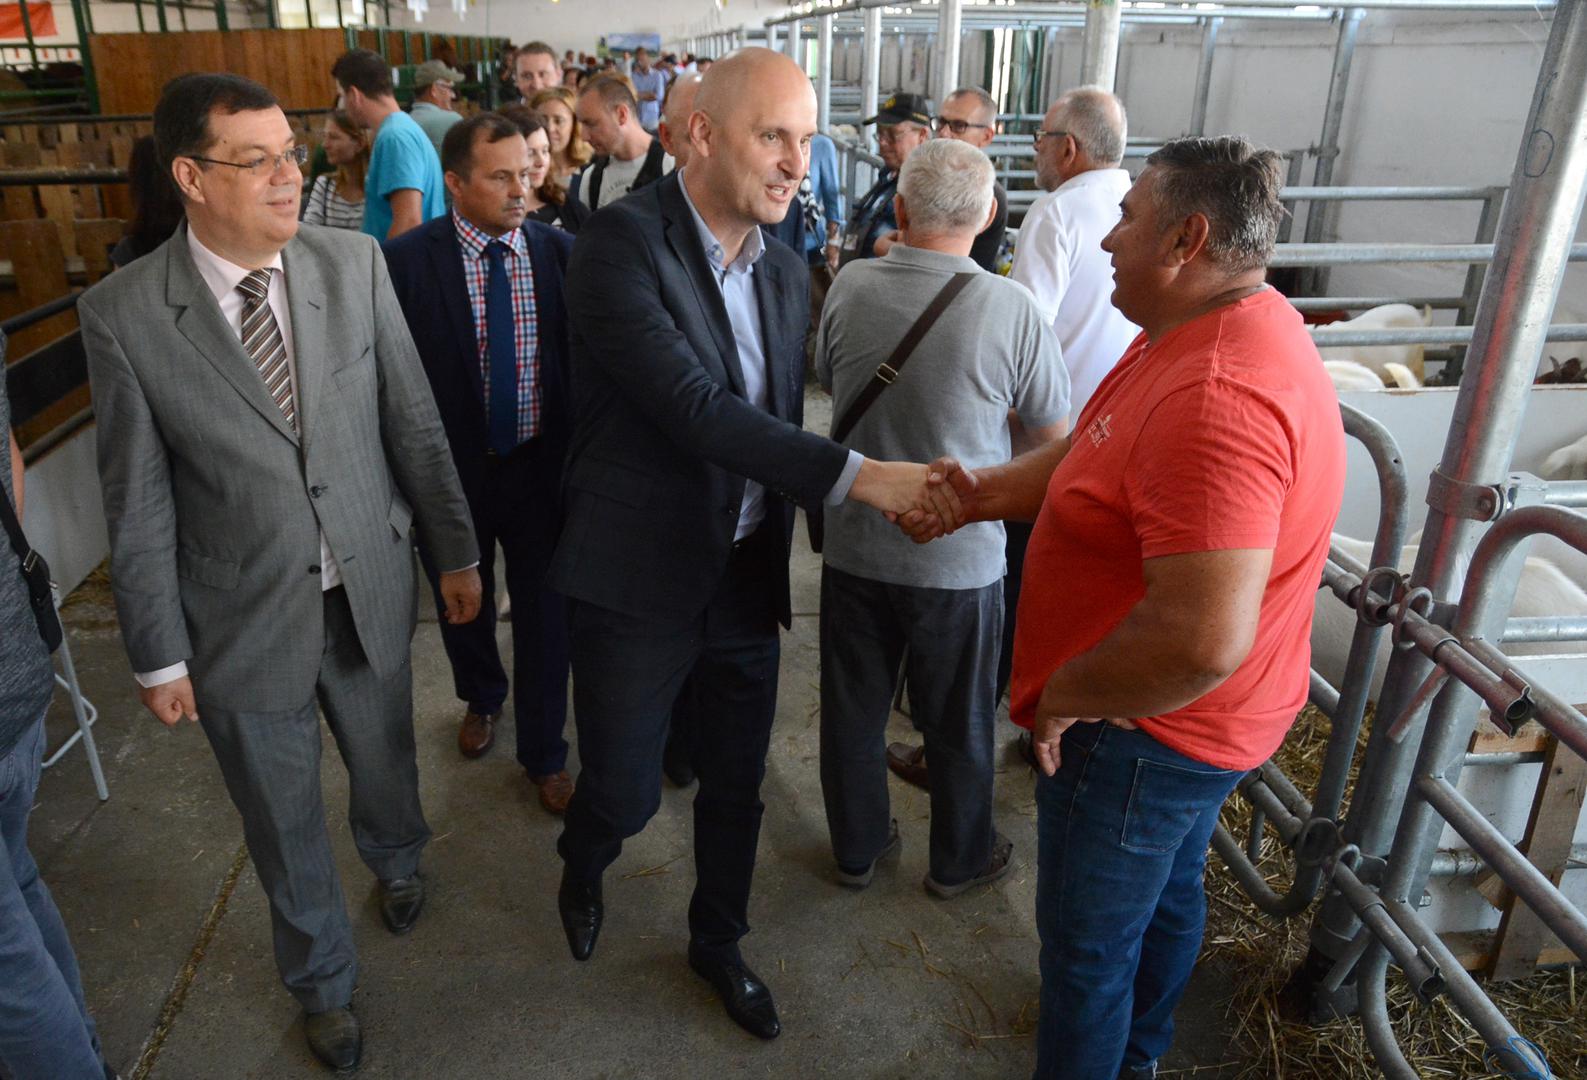 Hrvatske stočare koji su predstavili preko 500 kvalitetnih grla obišao je ministar poljoprivrede
Tomislav Tolušić, bjelovarsko-bilogoraski župan Damir Bajs i direktor Bjelovarskog sajma Davorin Posavac